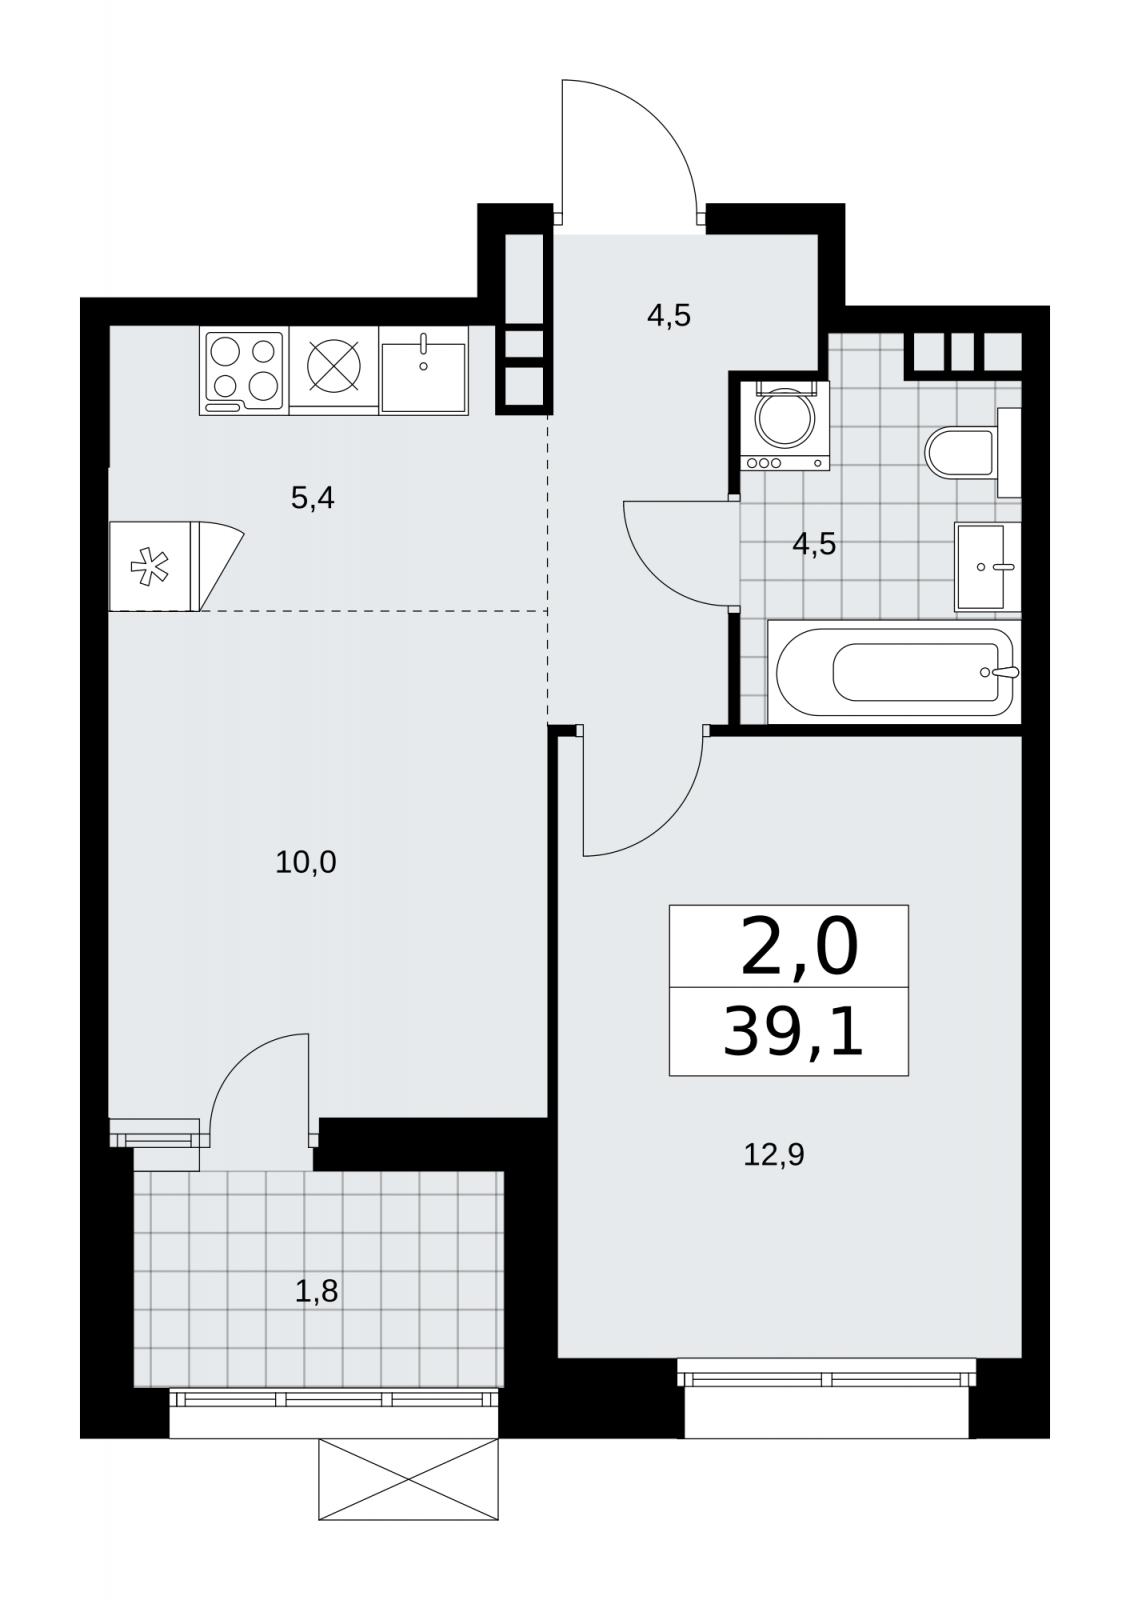 Продается 2-комн. квартира с европланировкой в новом жилом комплексе, недалеко от метро